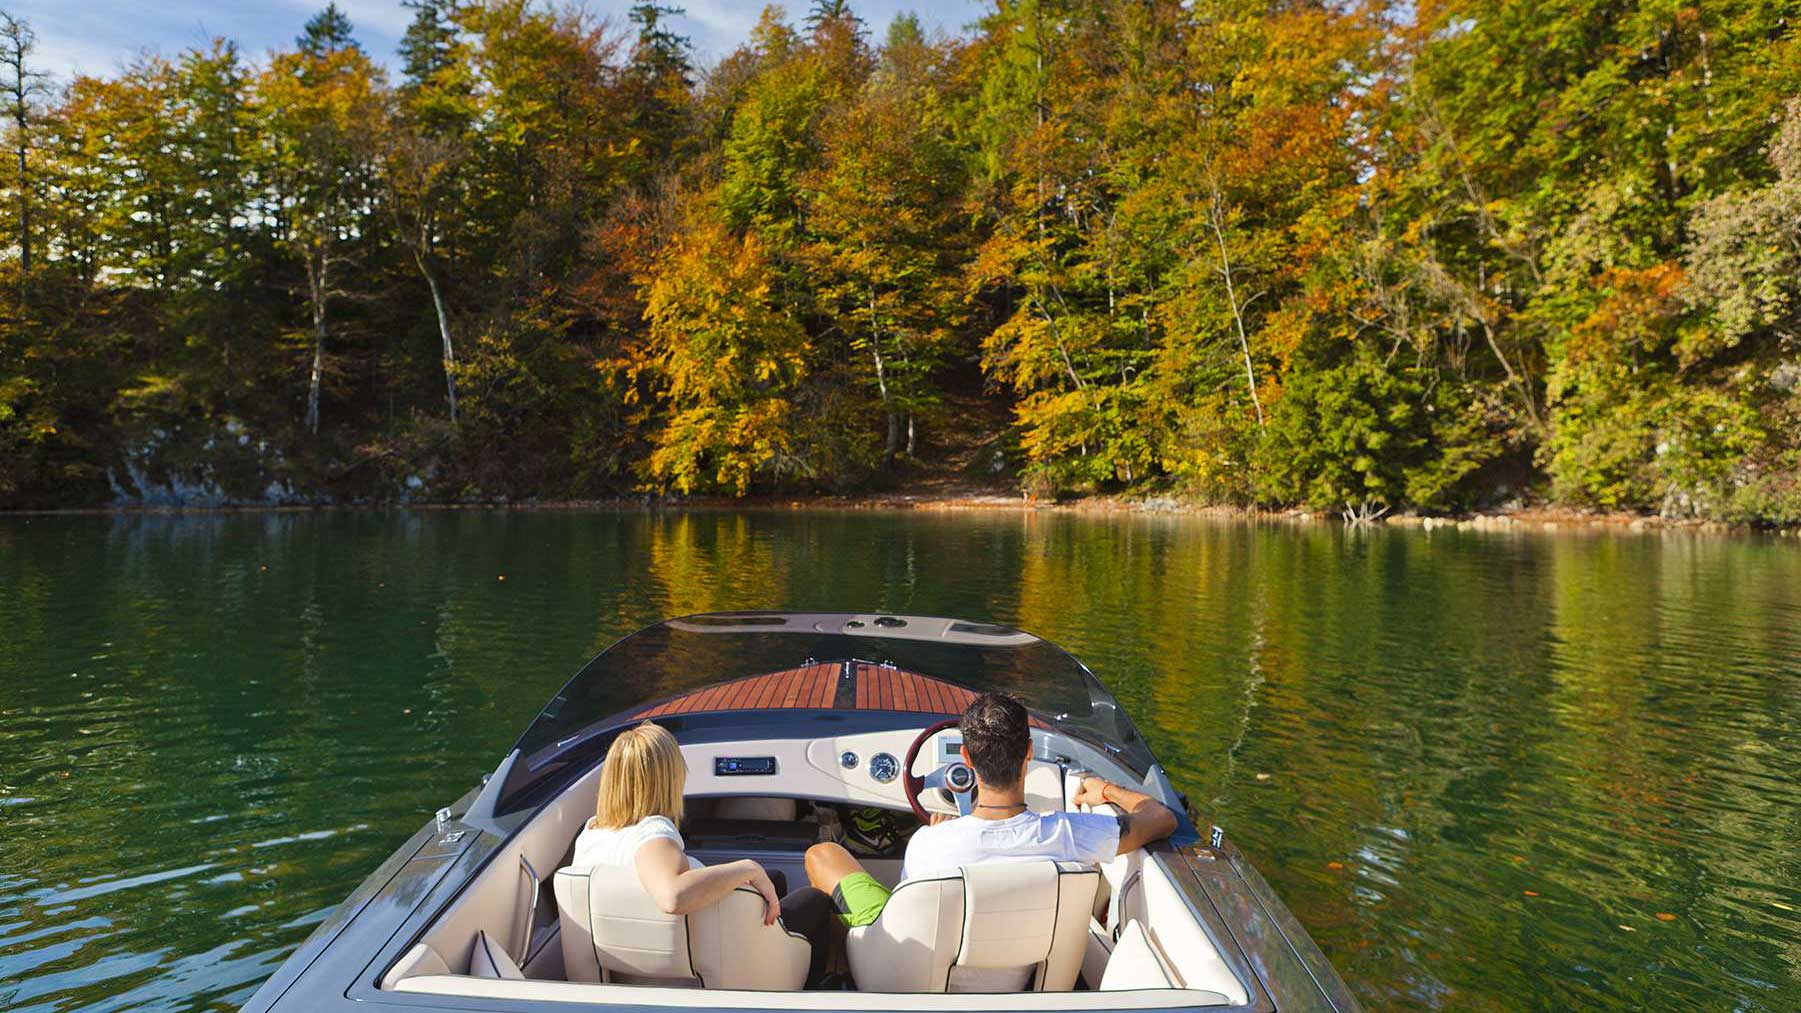 Boat trip in autumn